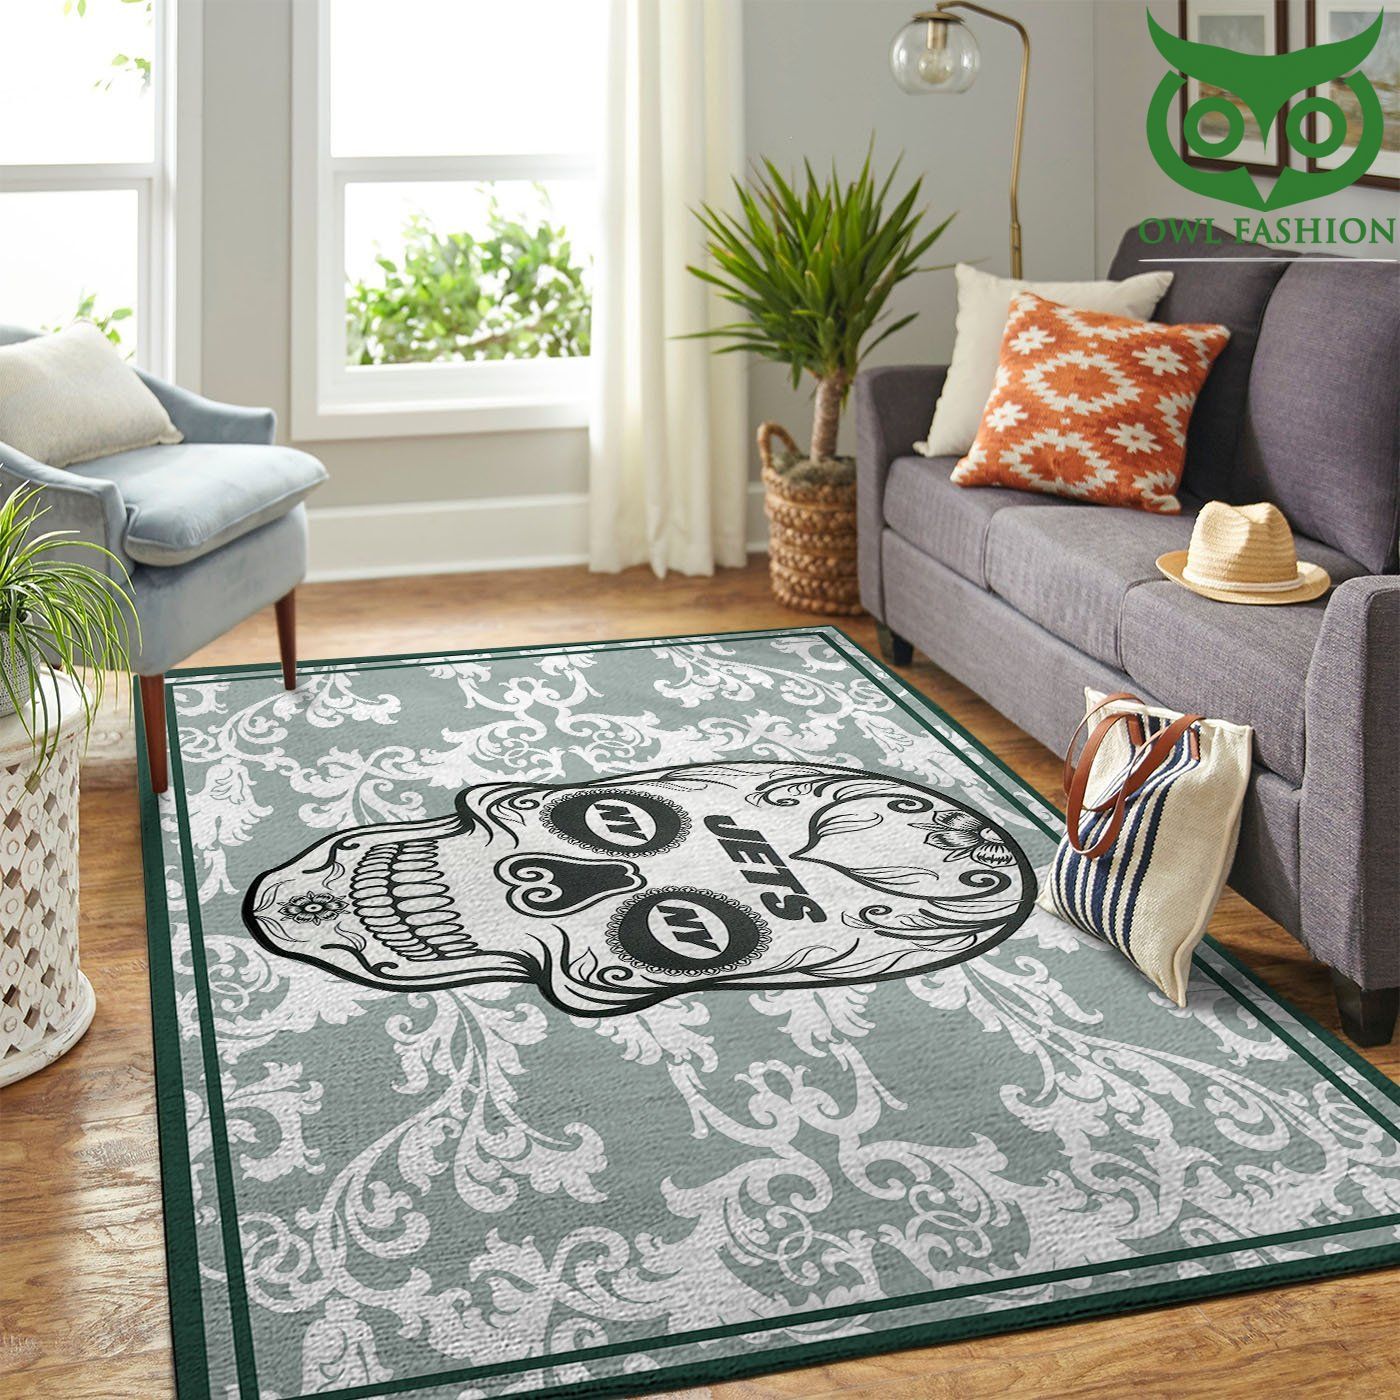 New York Jets Nfl Team Logo Skull Flower Style Nice carpet rug